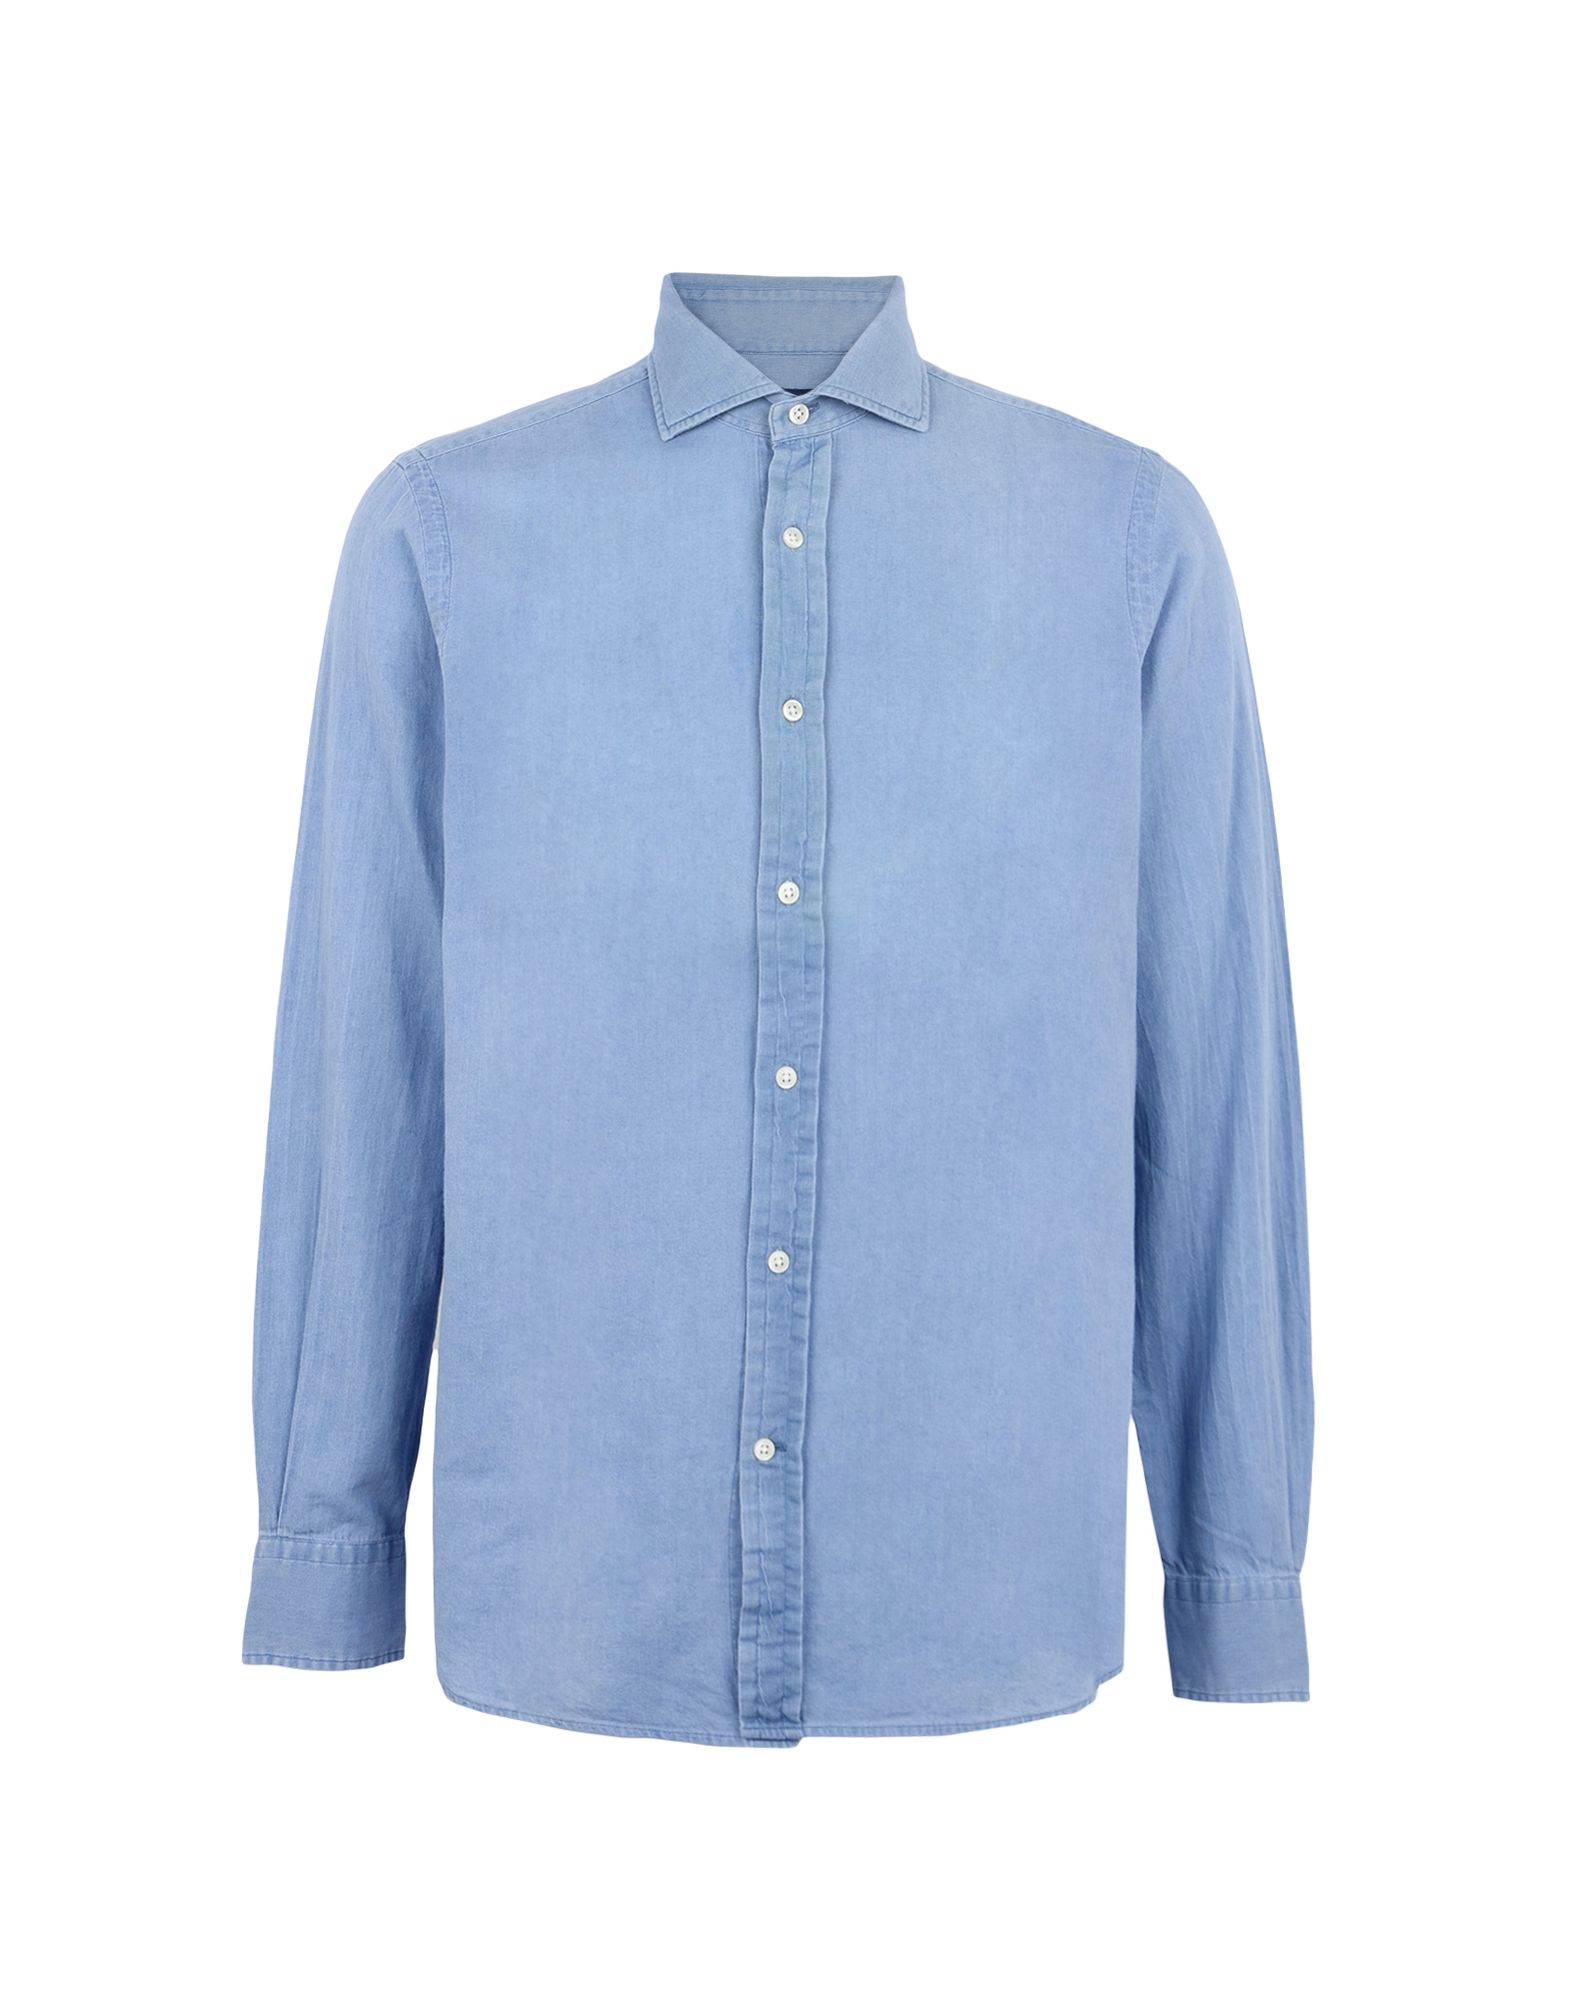 《送料無料》POLO RALPH LAUREN メンズ デニムシャツ ブルー L コットン 100% Twill Shirt